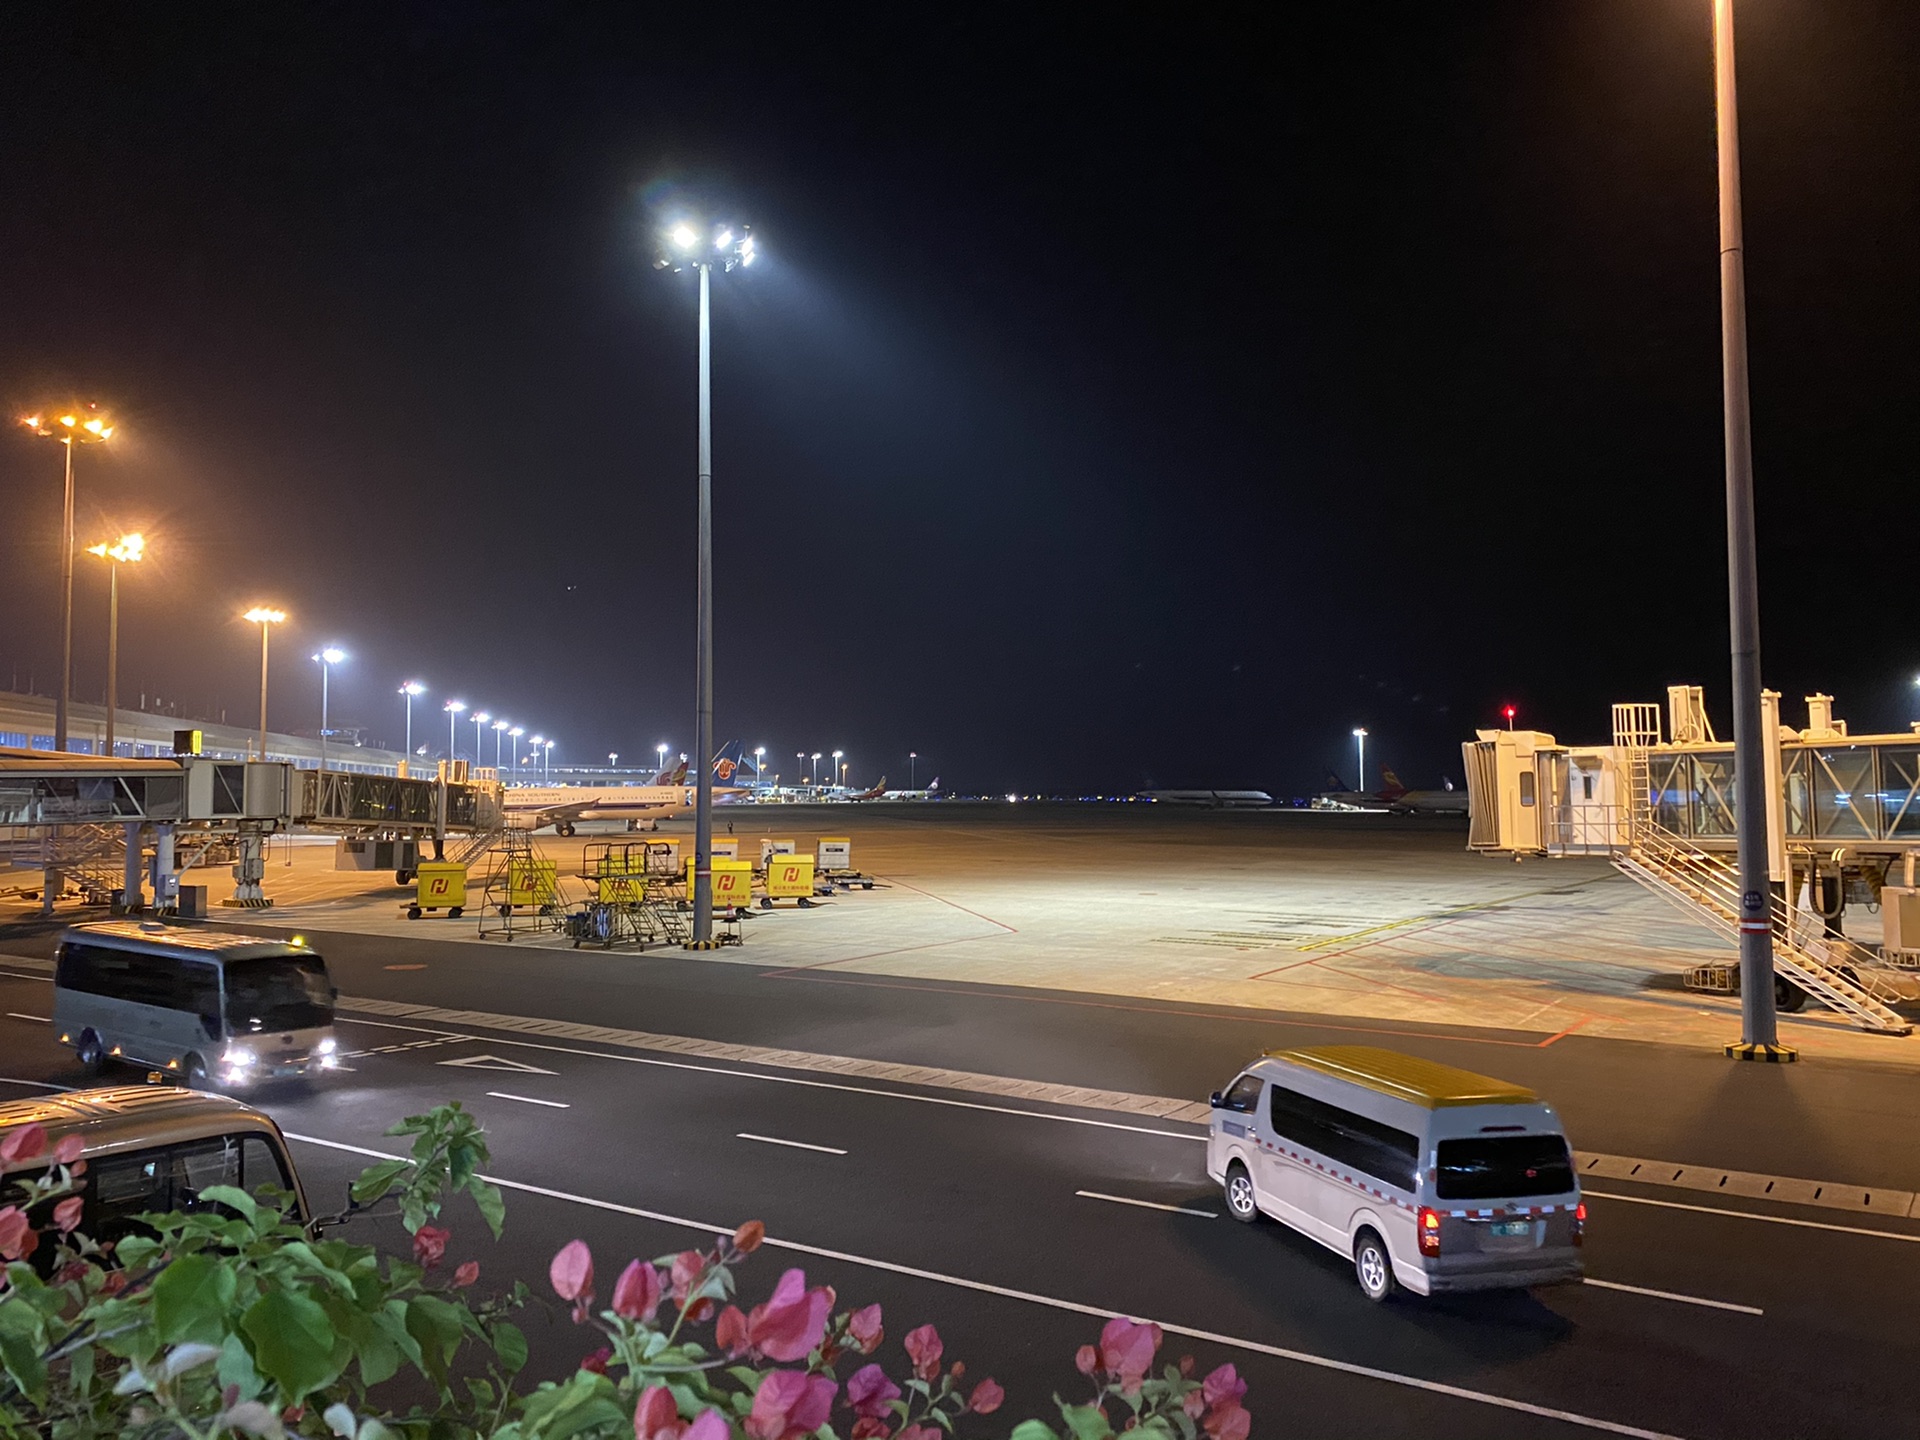 海口机场夜景图片